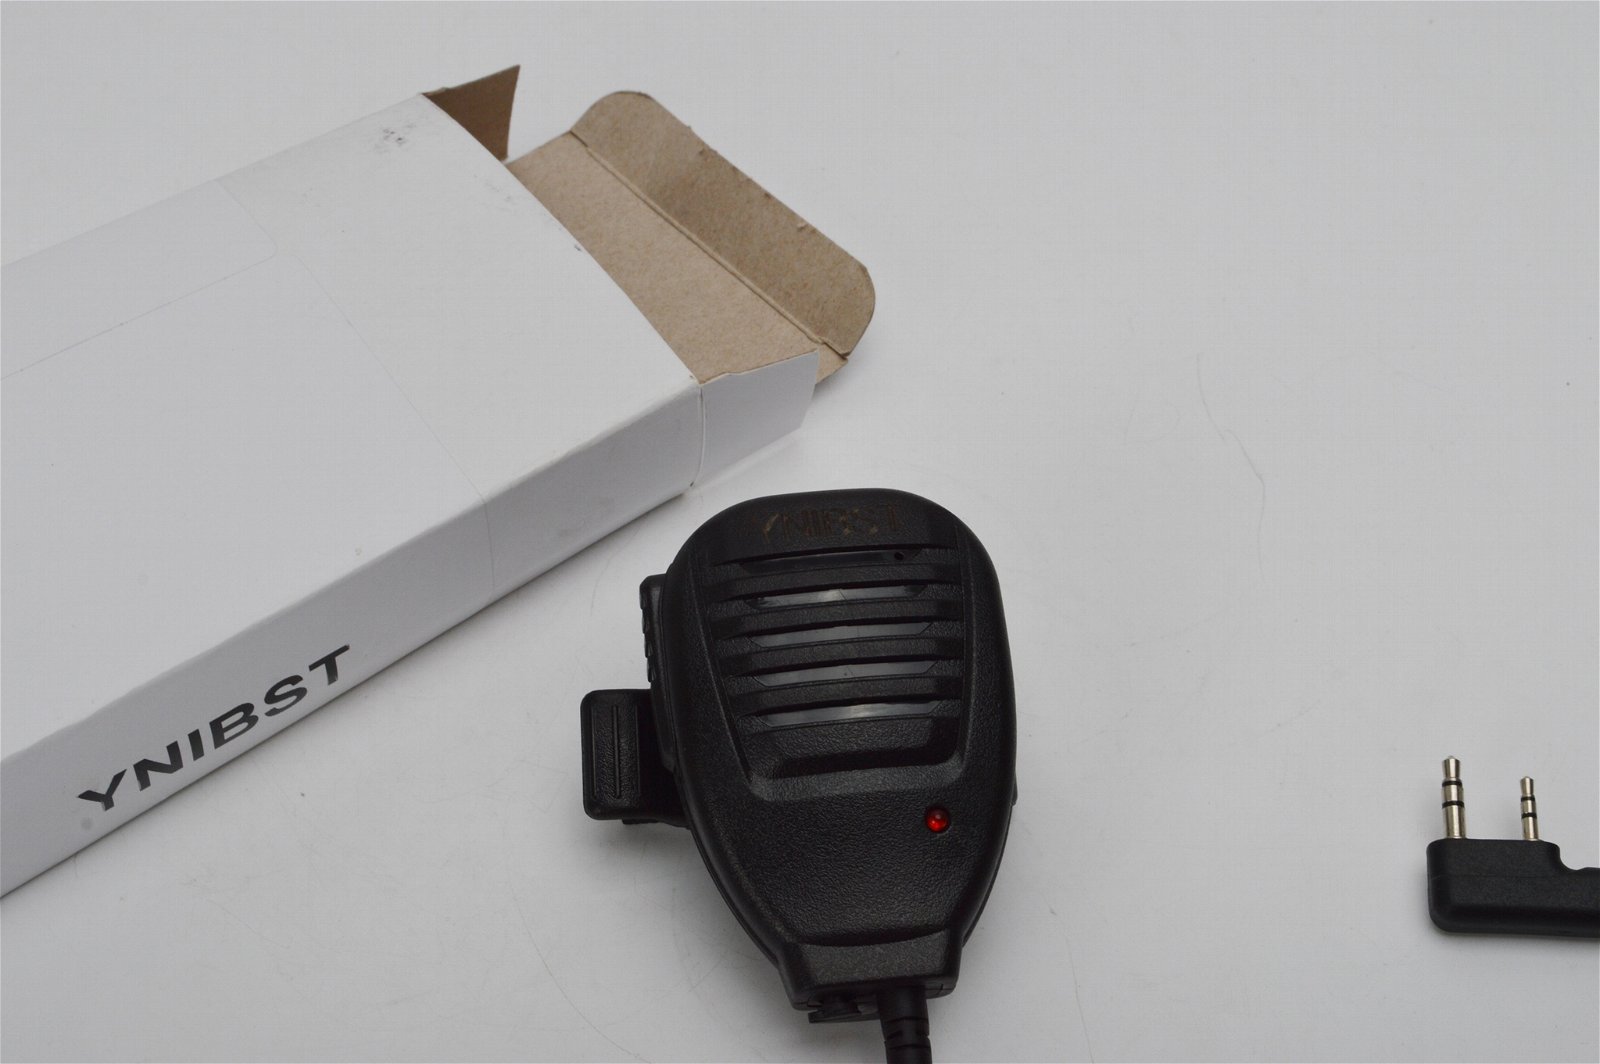 YNIBST replacement 2-way radio Speaker microphone For Baofeng UV5R Kenwood